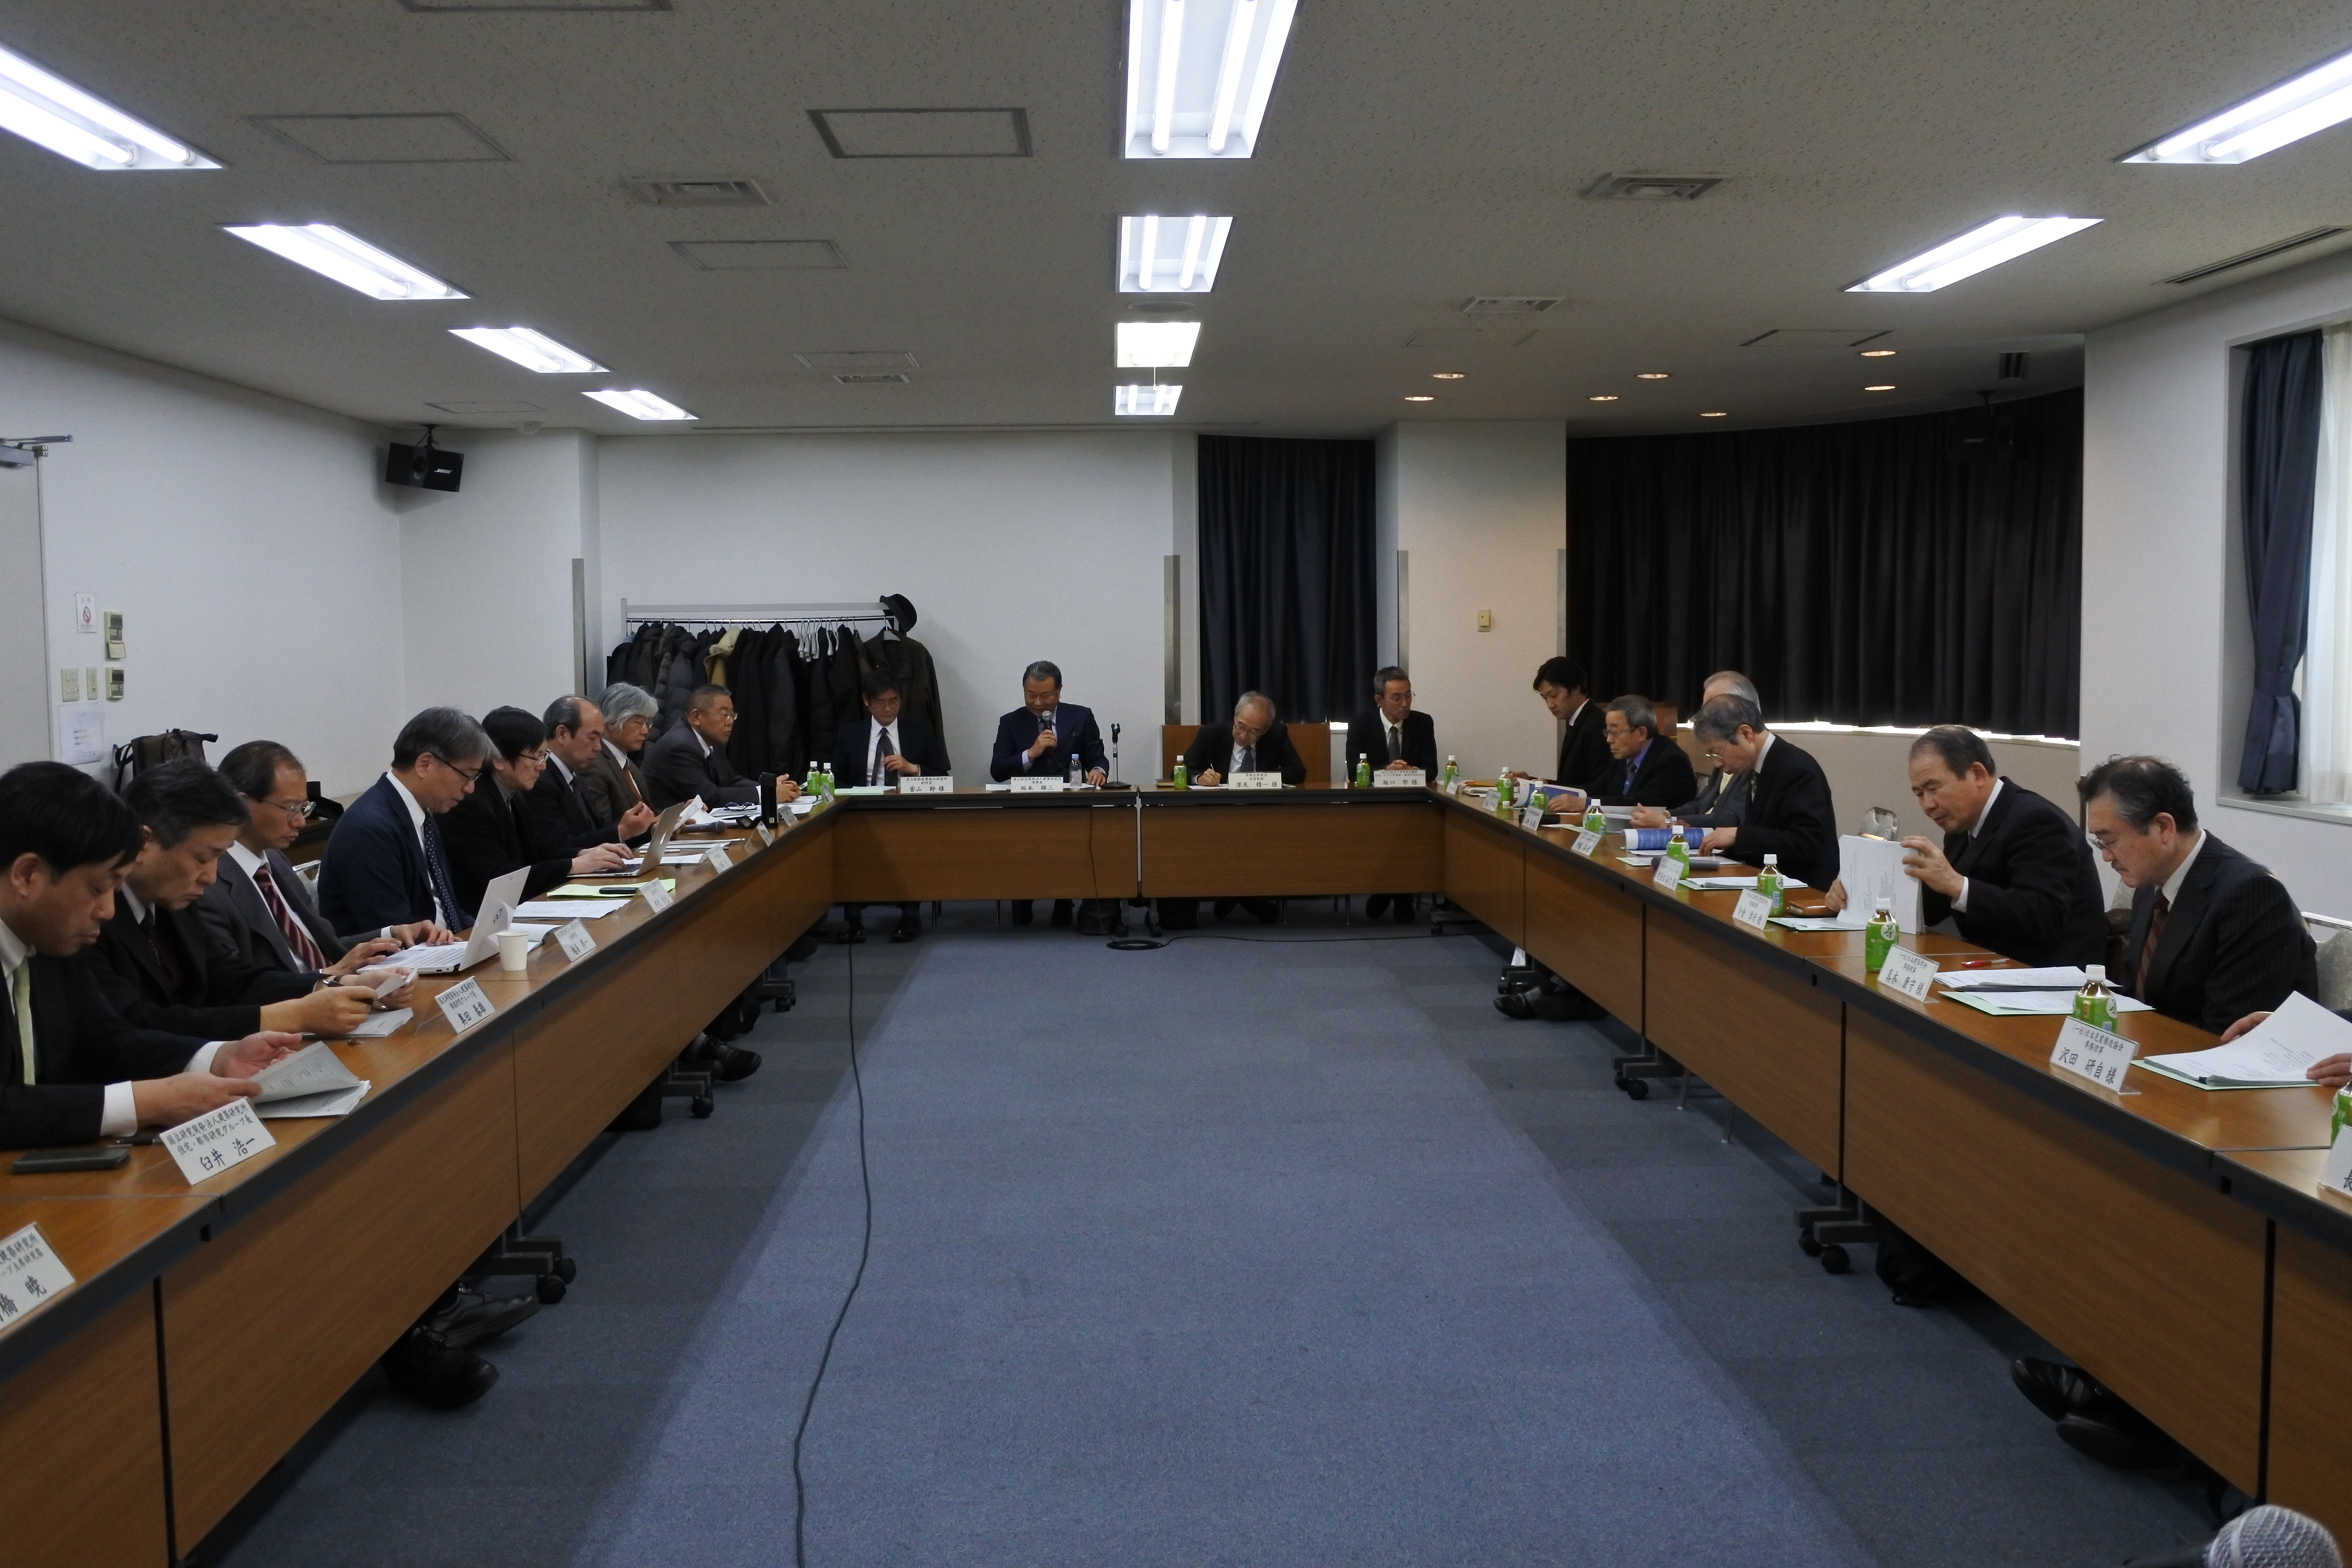 CIB Domestic Council of Japan